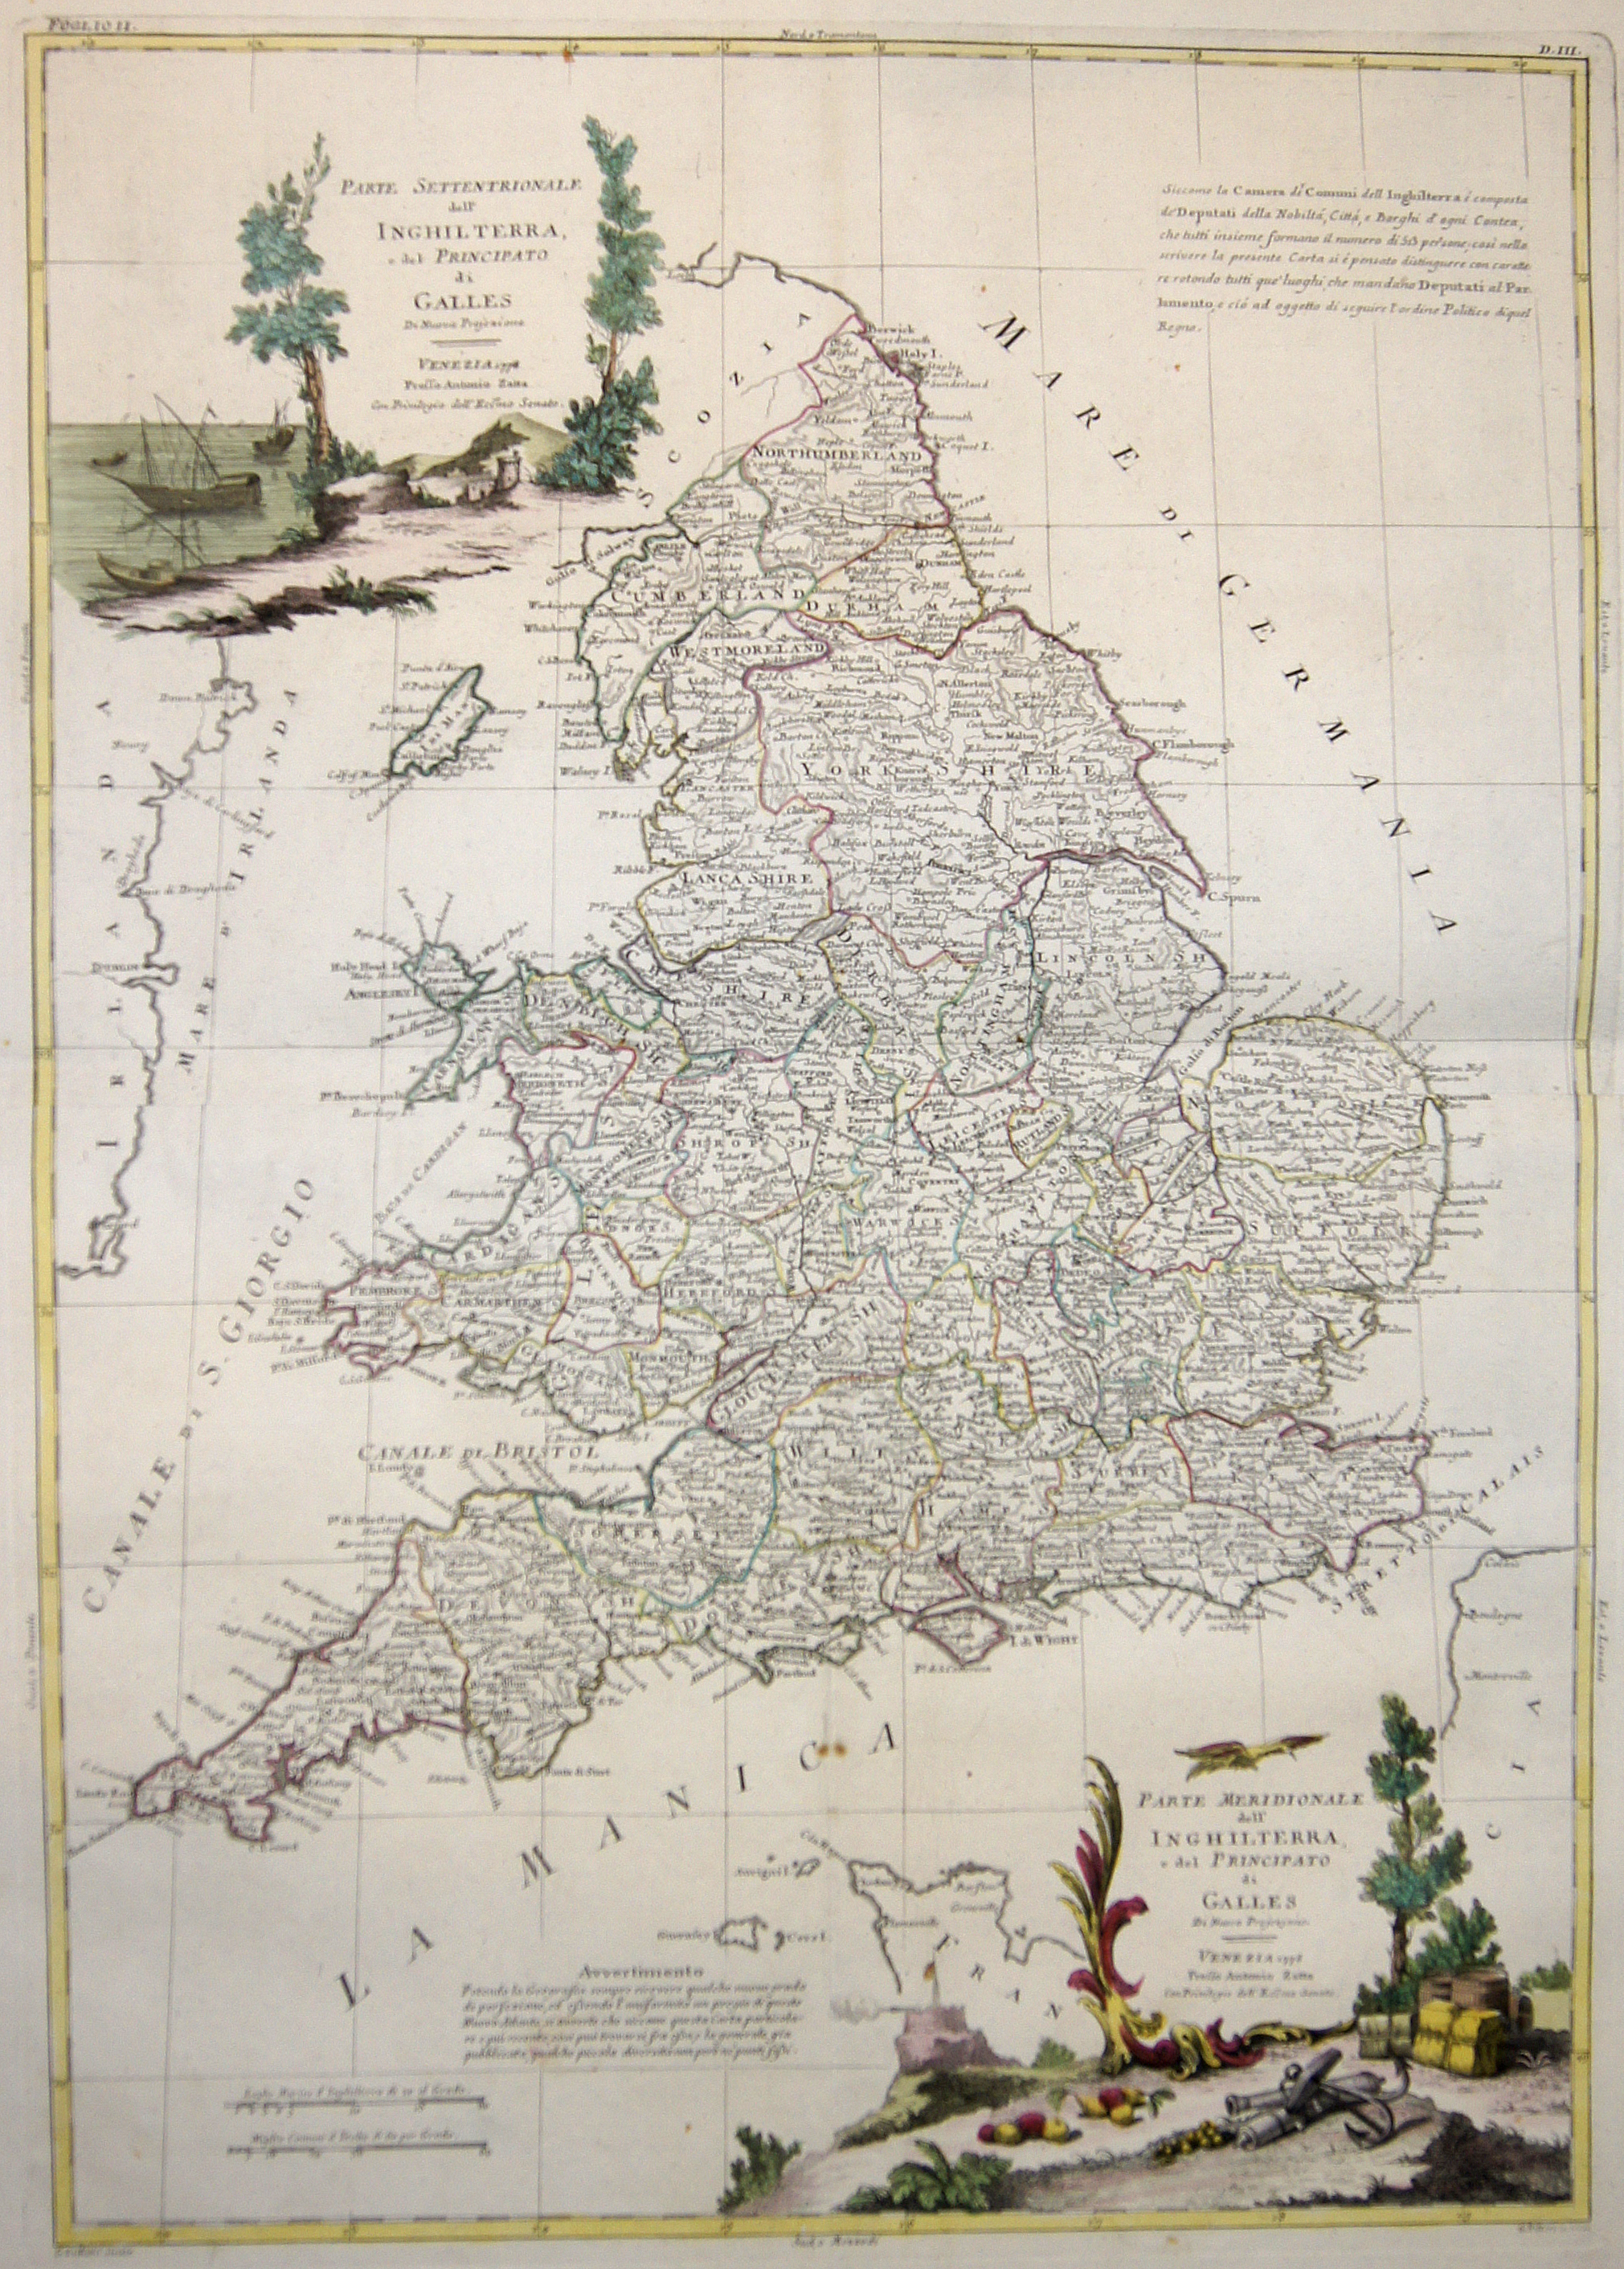 Zatta  Parte Settentrionale dell’ Inghilterra, e del Principato di Galles / Parte Meridionale dell’ Inghilterra, e del Principato die Galles